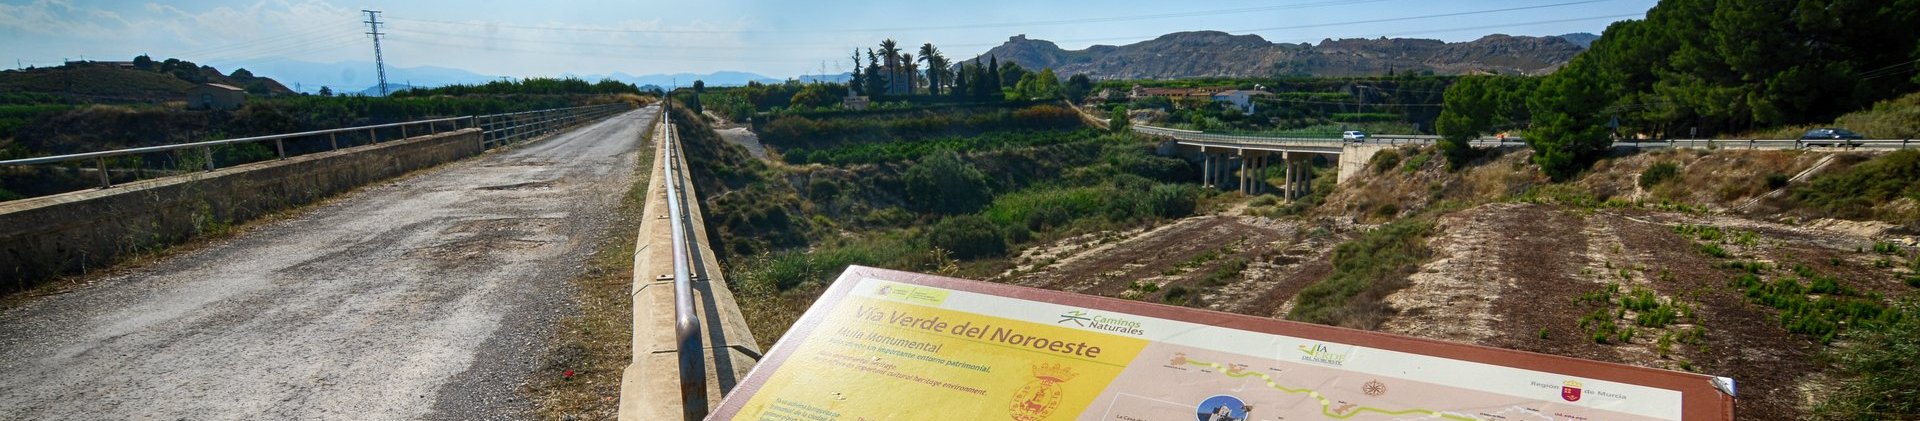 Senda del tiempo, Mula: opinión, experiencia - Qué ver en Mula: Naturaleza, patrimonio - Región de Murcia - Forum Murcia